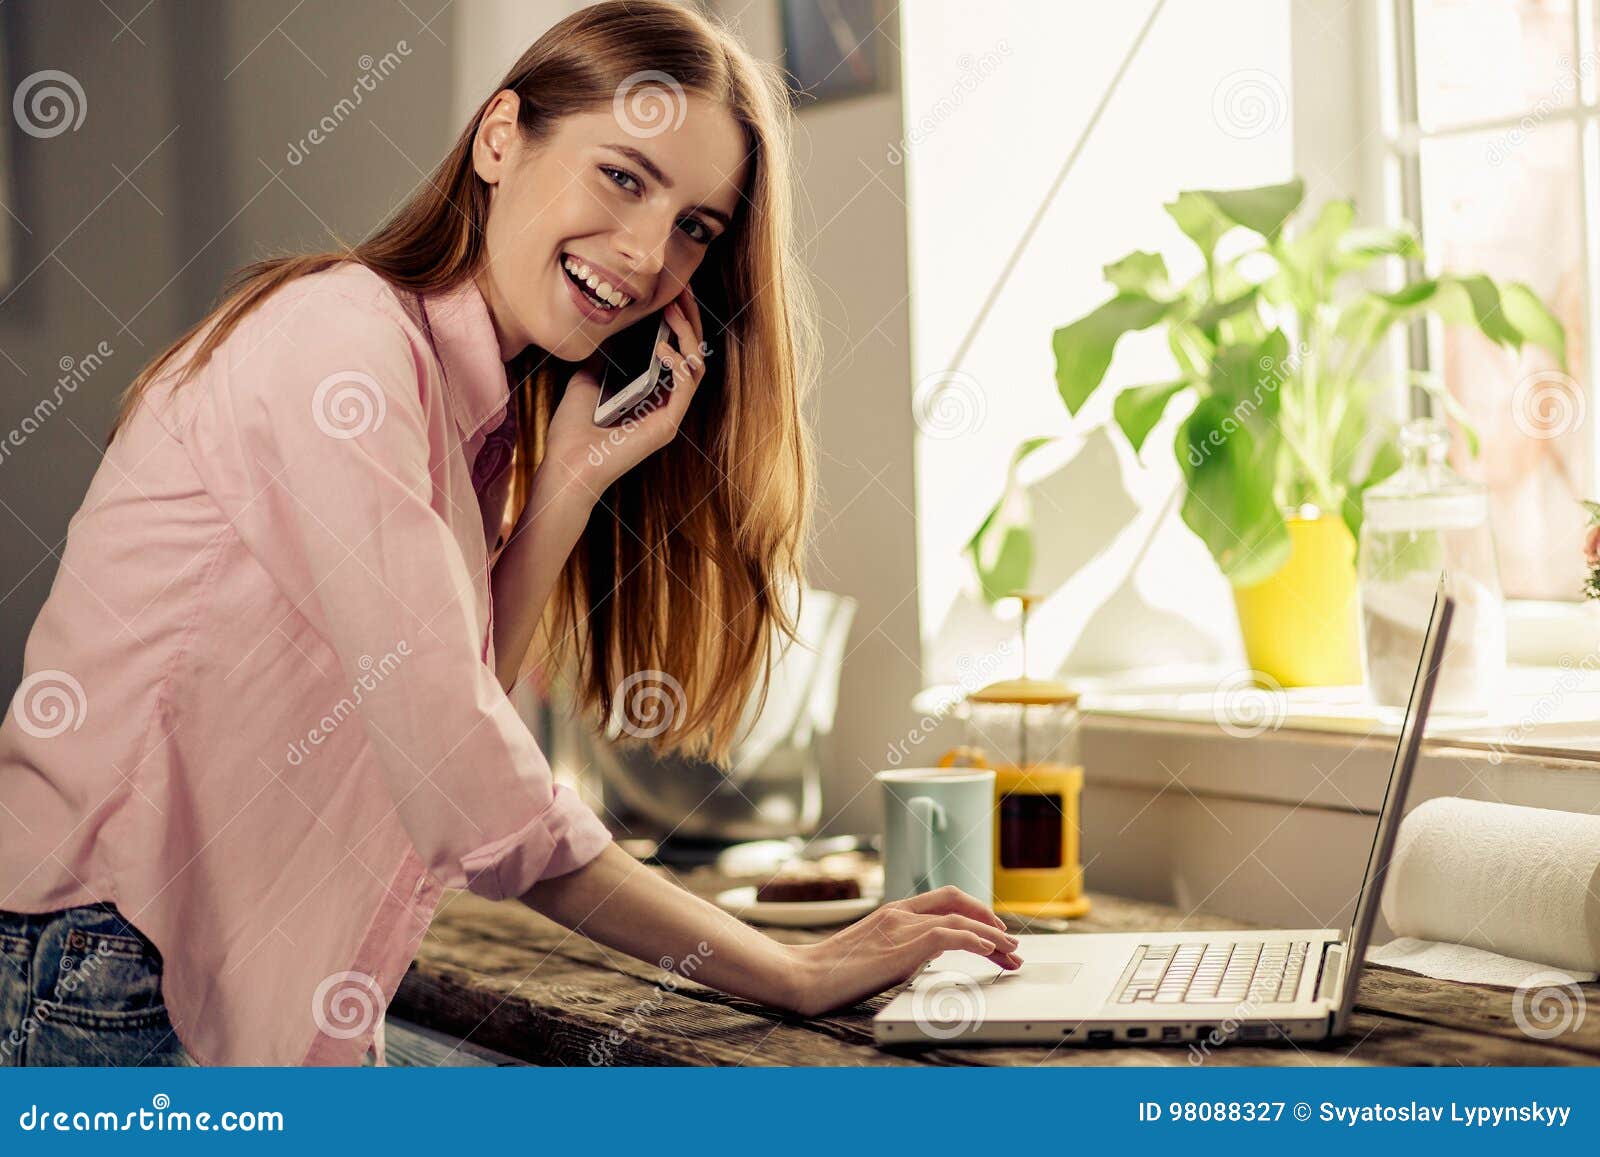 Жена сидит в телефоне. Женщина работает дома телефонам. Девушка в интерьере возле компьютера. Девушка работает в доме вечером. Девушка работает с документами.